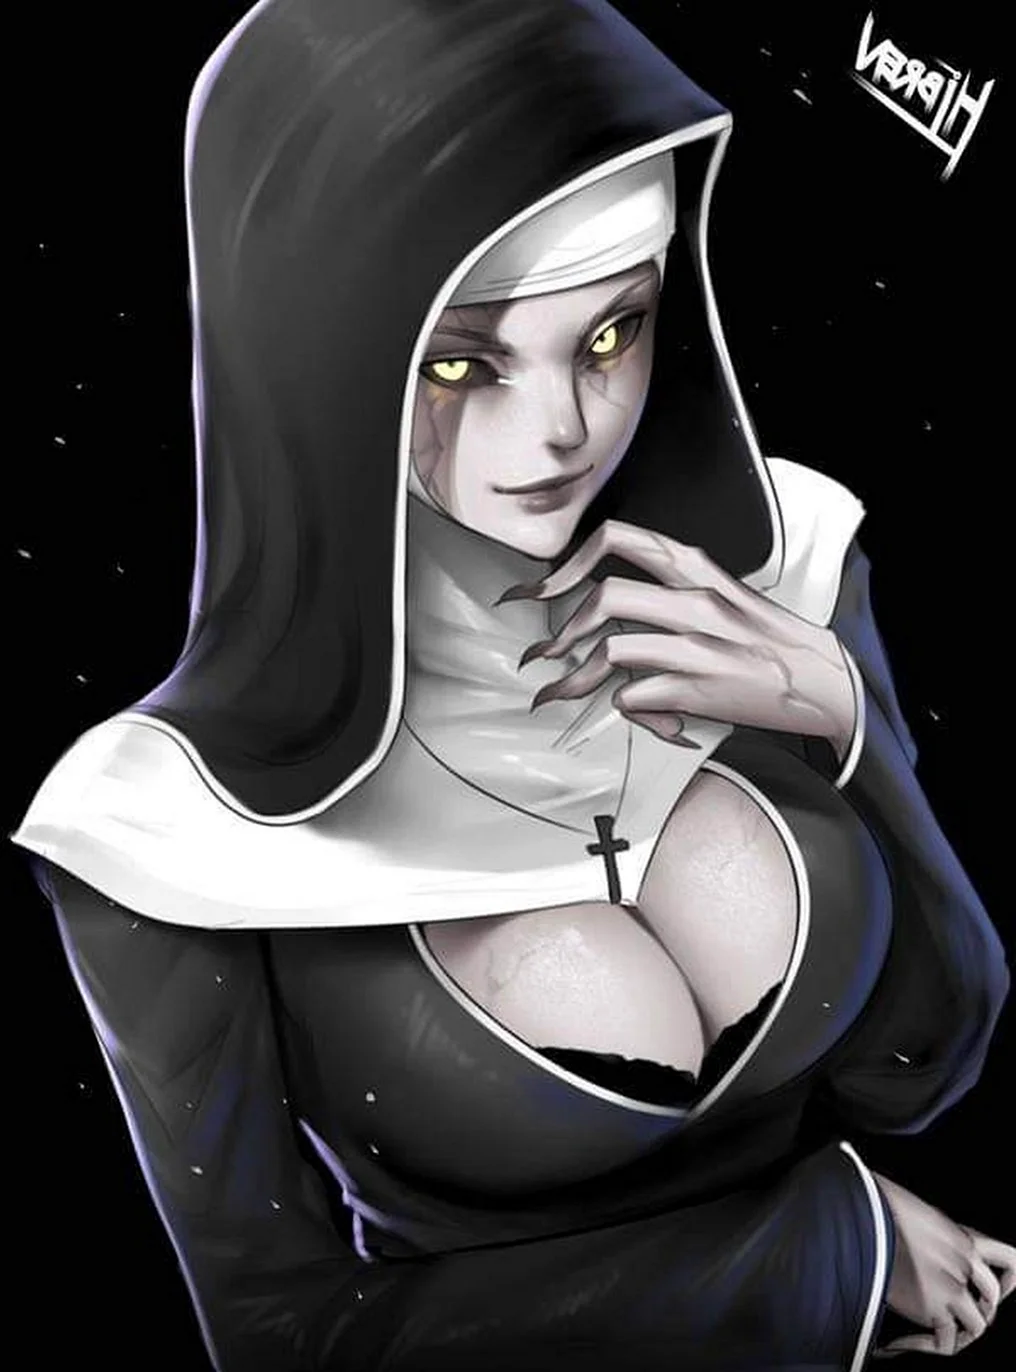 Beatriz Mariana монахиня